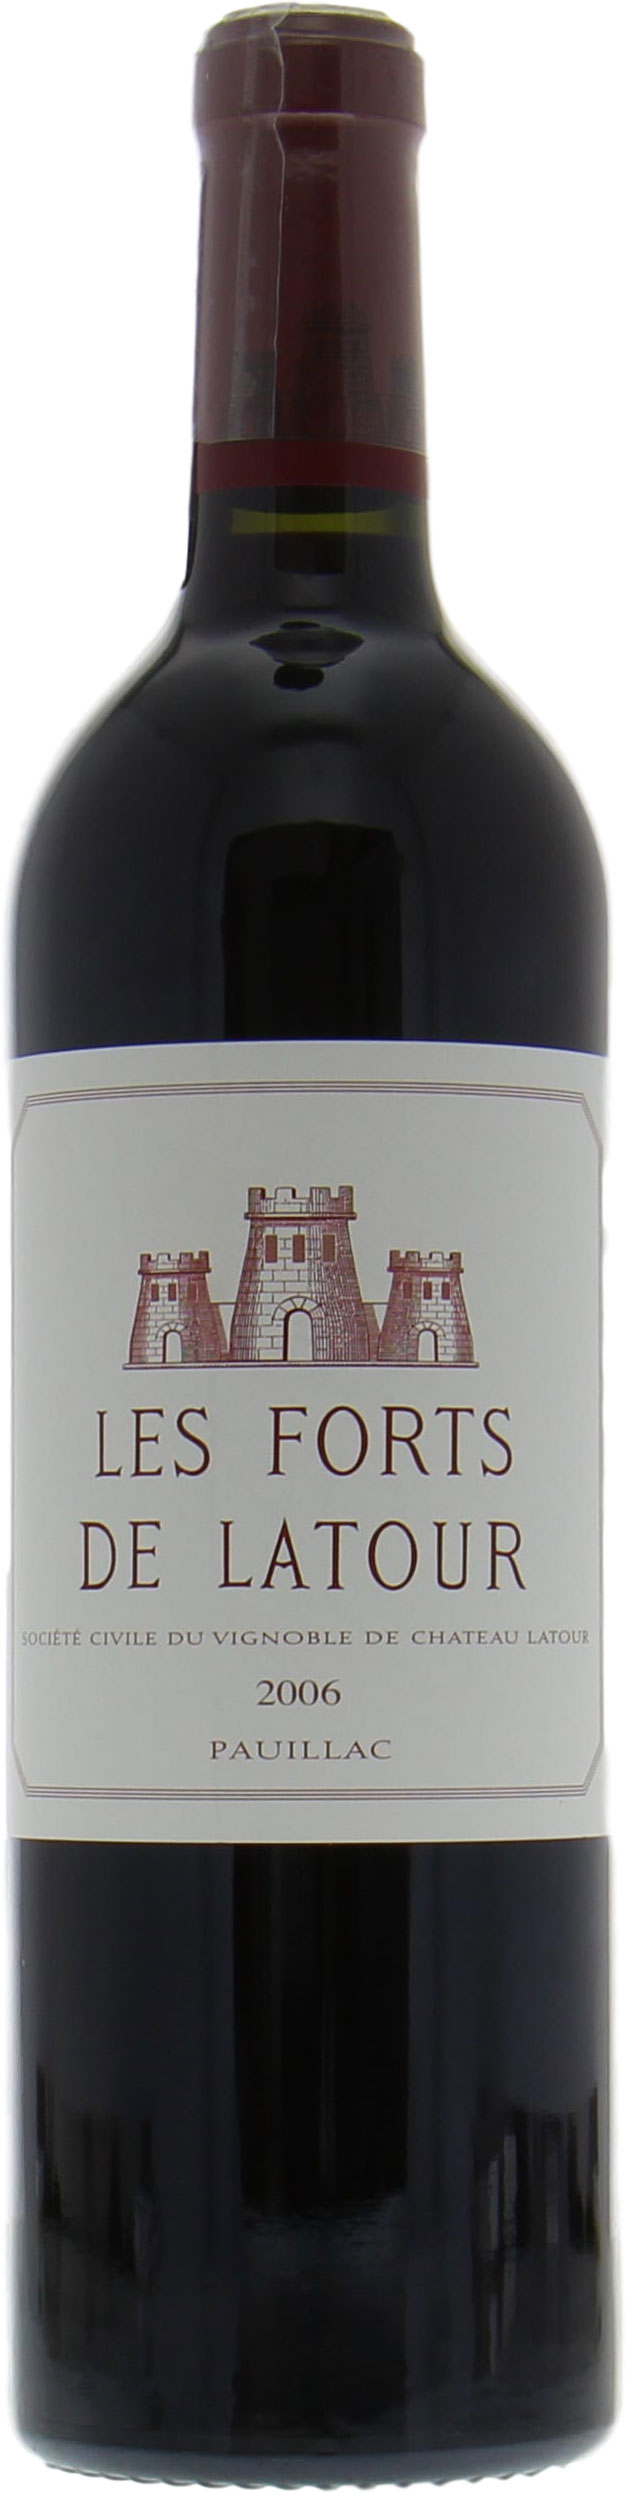 Chateau Latour - Les Forts de Latour 2006